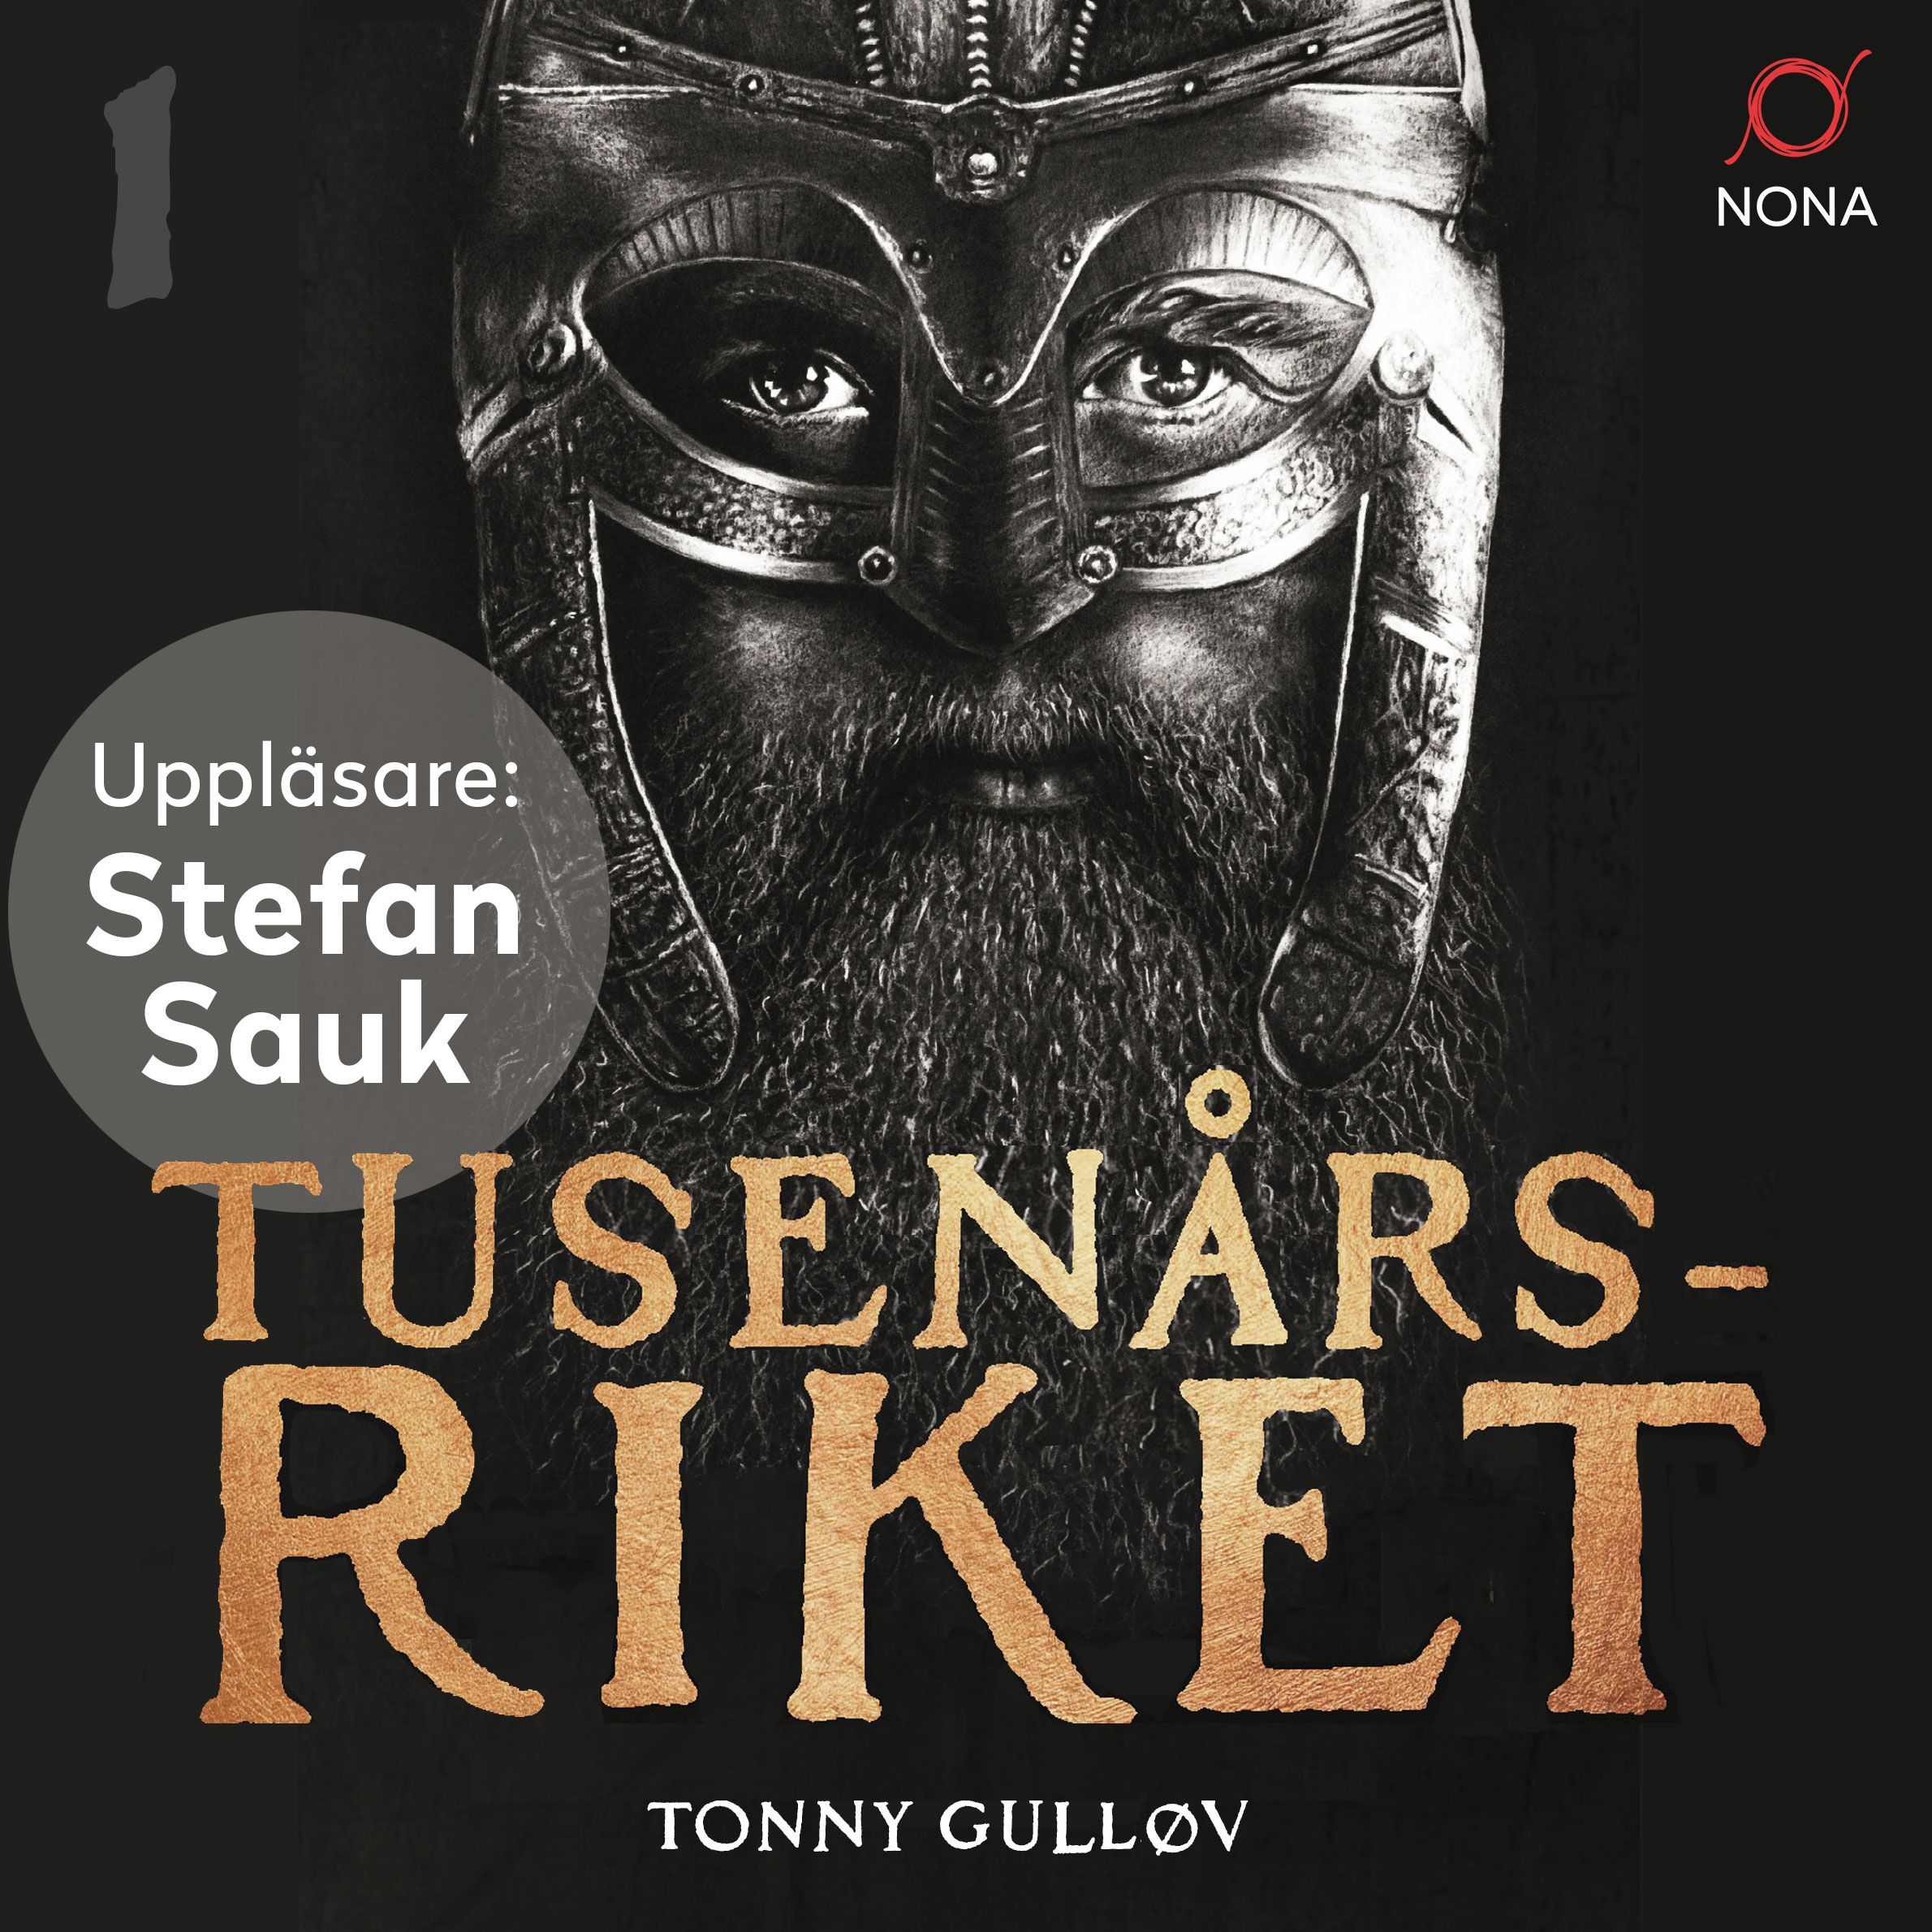 Tusenårsriket, ljudbok av Tonny Gulløv